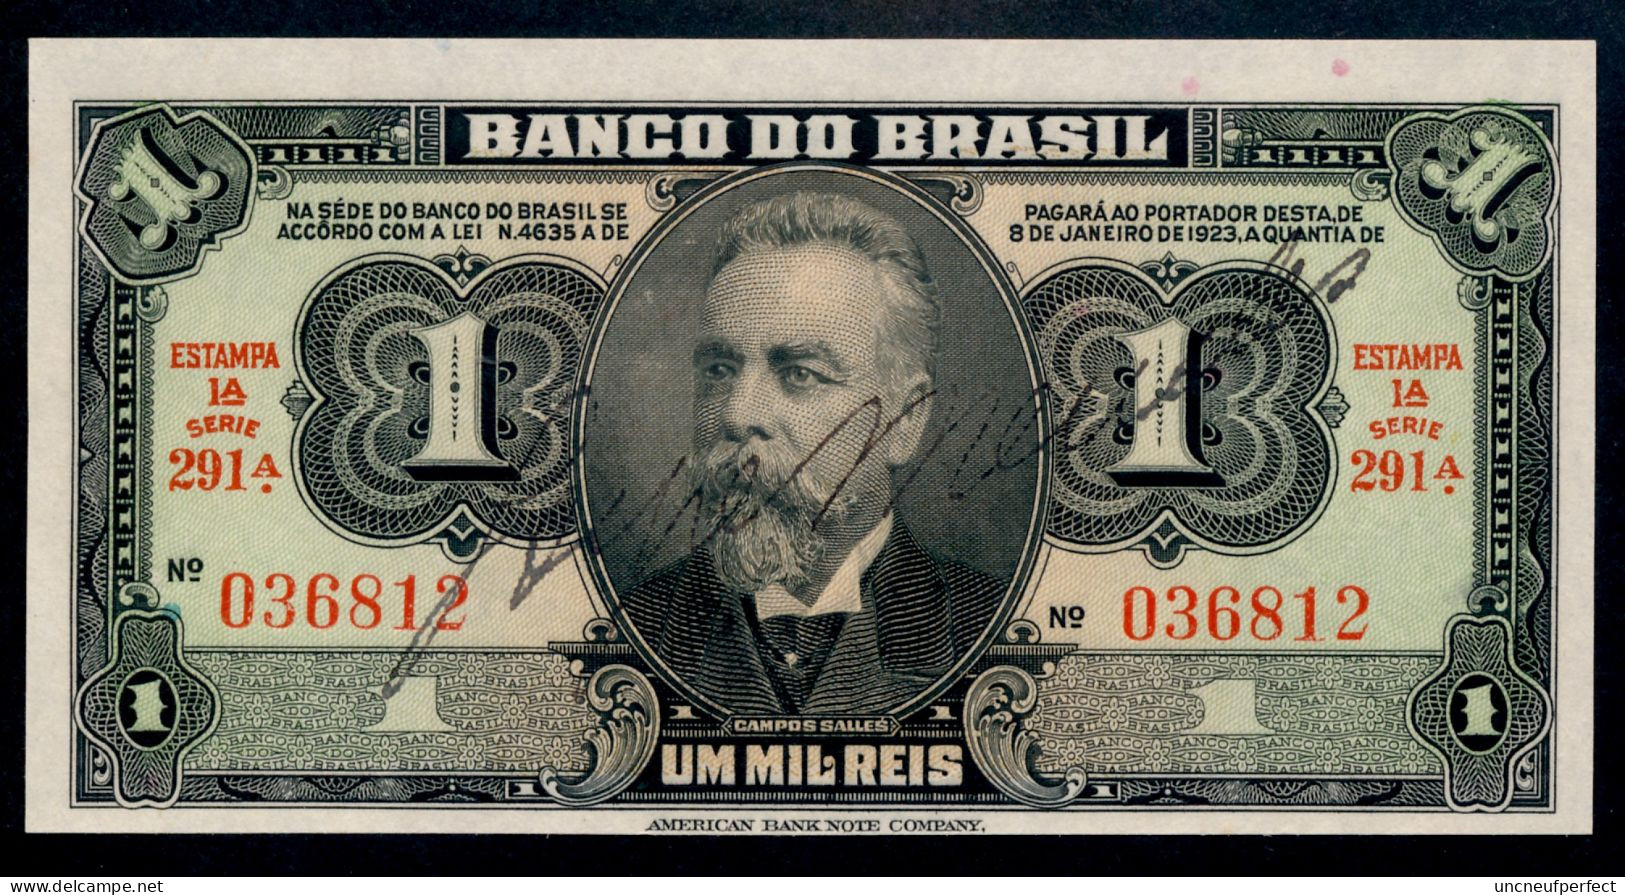 Brésil P 131a (1944) 1 MIL REIS - UNC - Série 291 N° 036812 RARE!!! - Brasilien